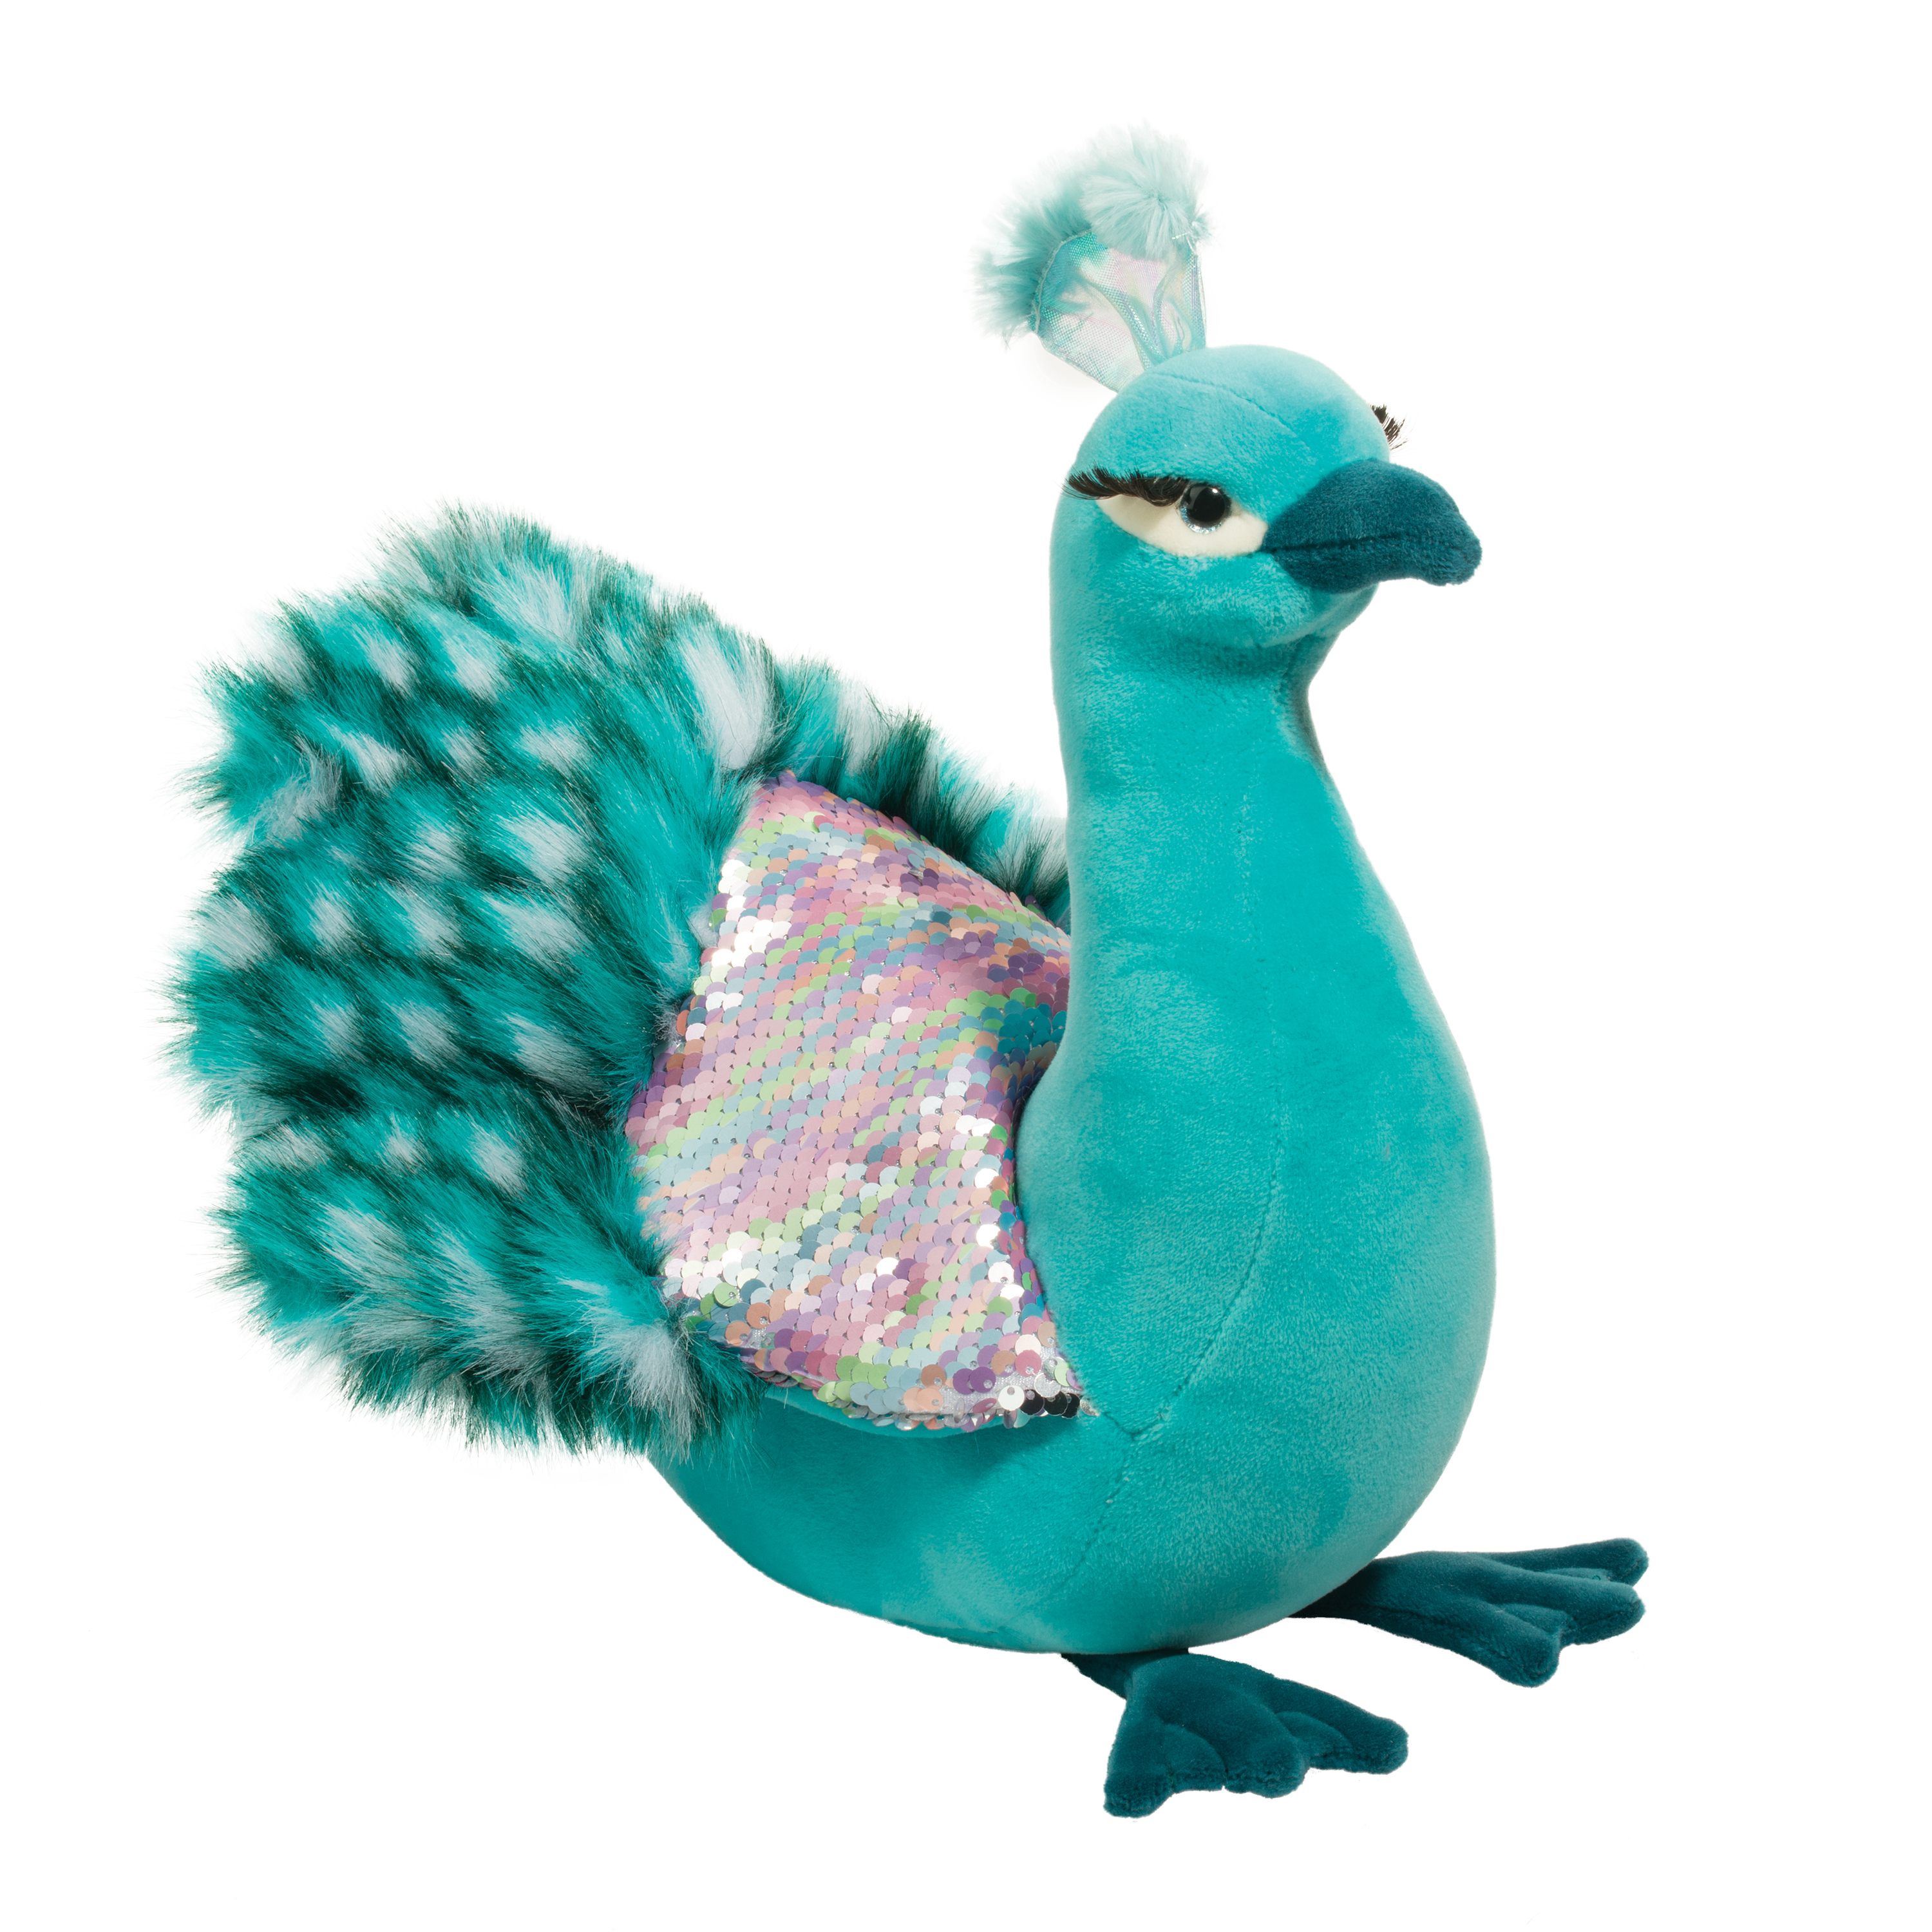 stuffed peacock